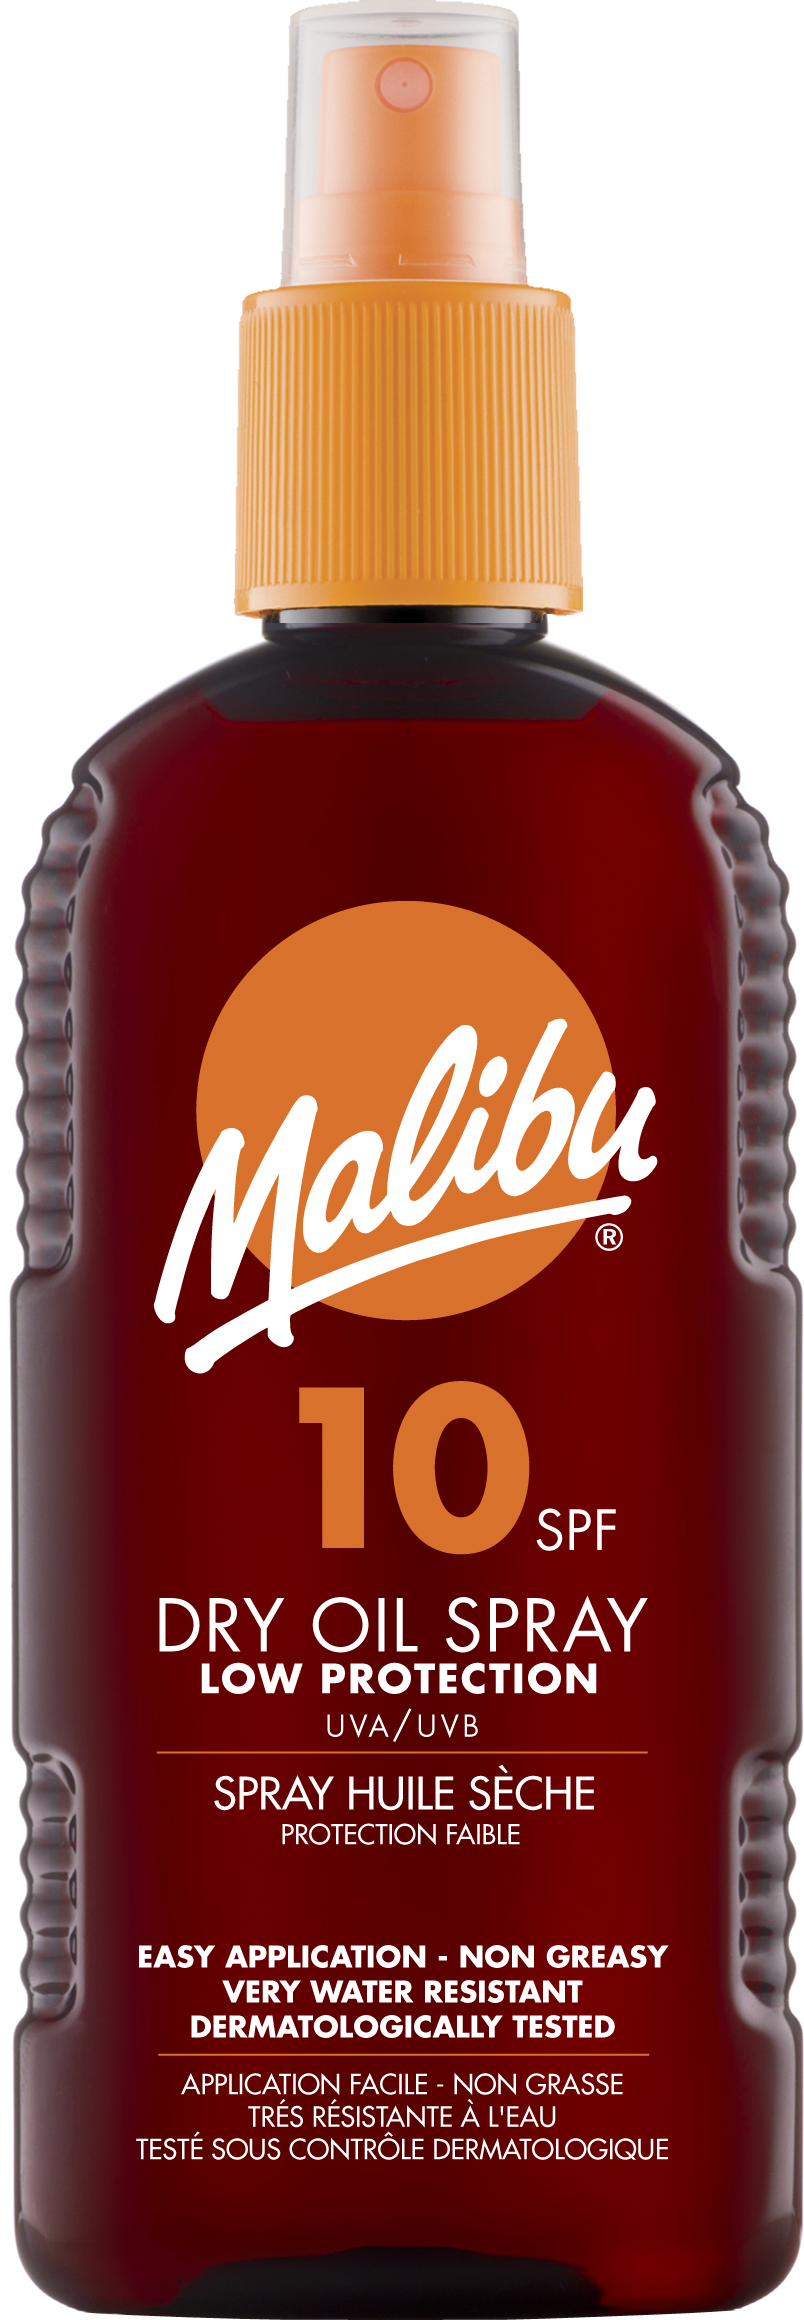 Malibu Dry Oil Spray SPF 10